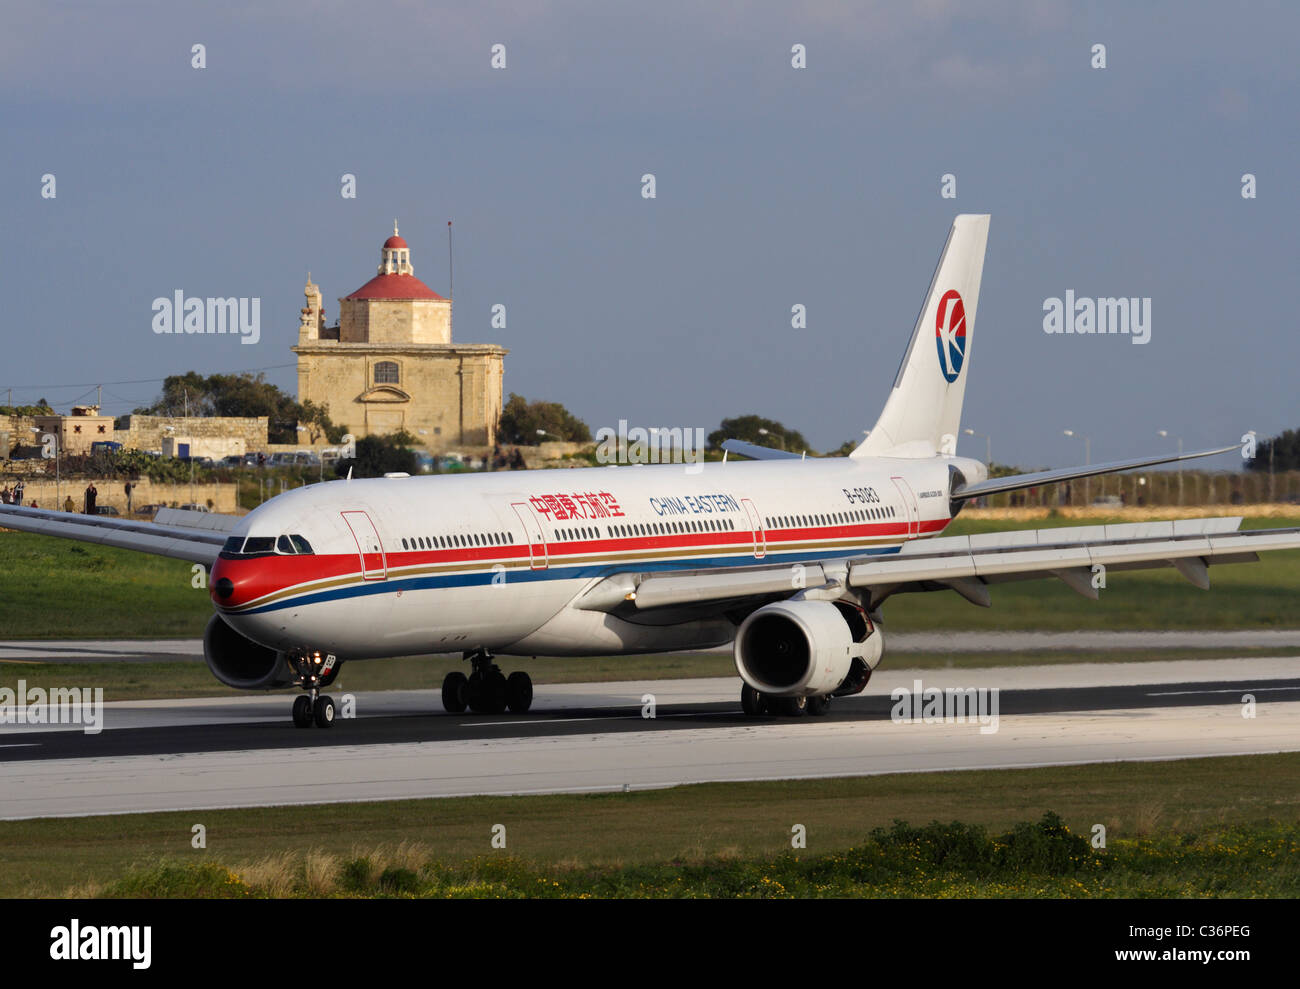 China Eastern Airlines Airbus A330-300 que llegan a Malta para repatriar a chinos evacuados de Libia, el 27 de febrero de 2011 Foto de stock